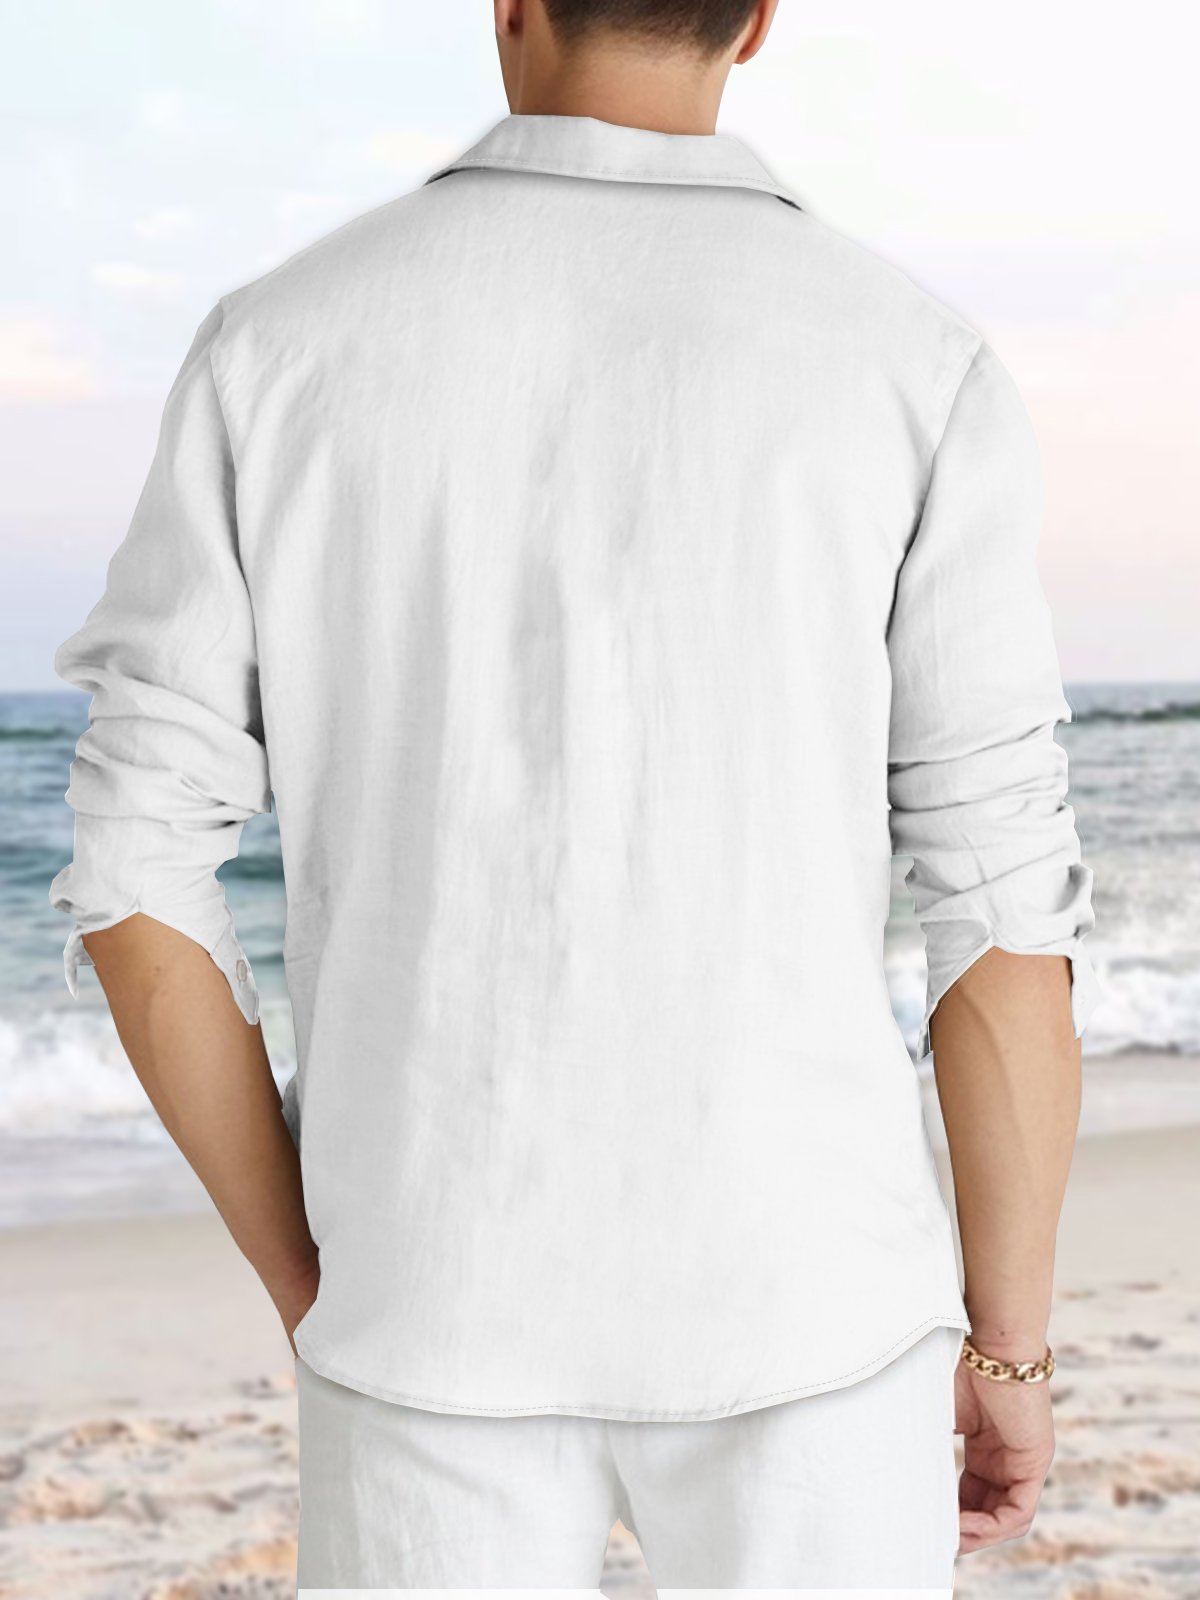 Men's Embroidered Pintuck Panel Cotton Linen Long Sleeve Shirt